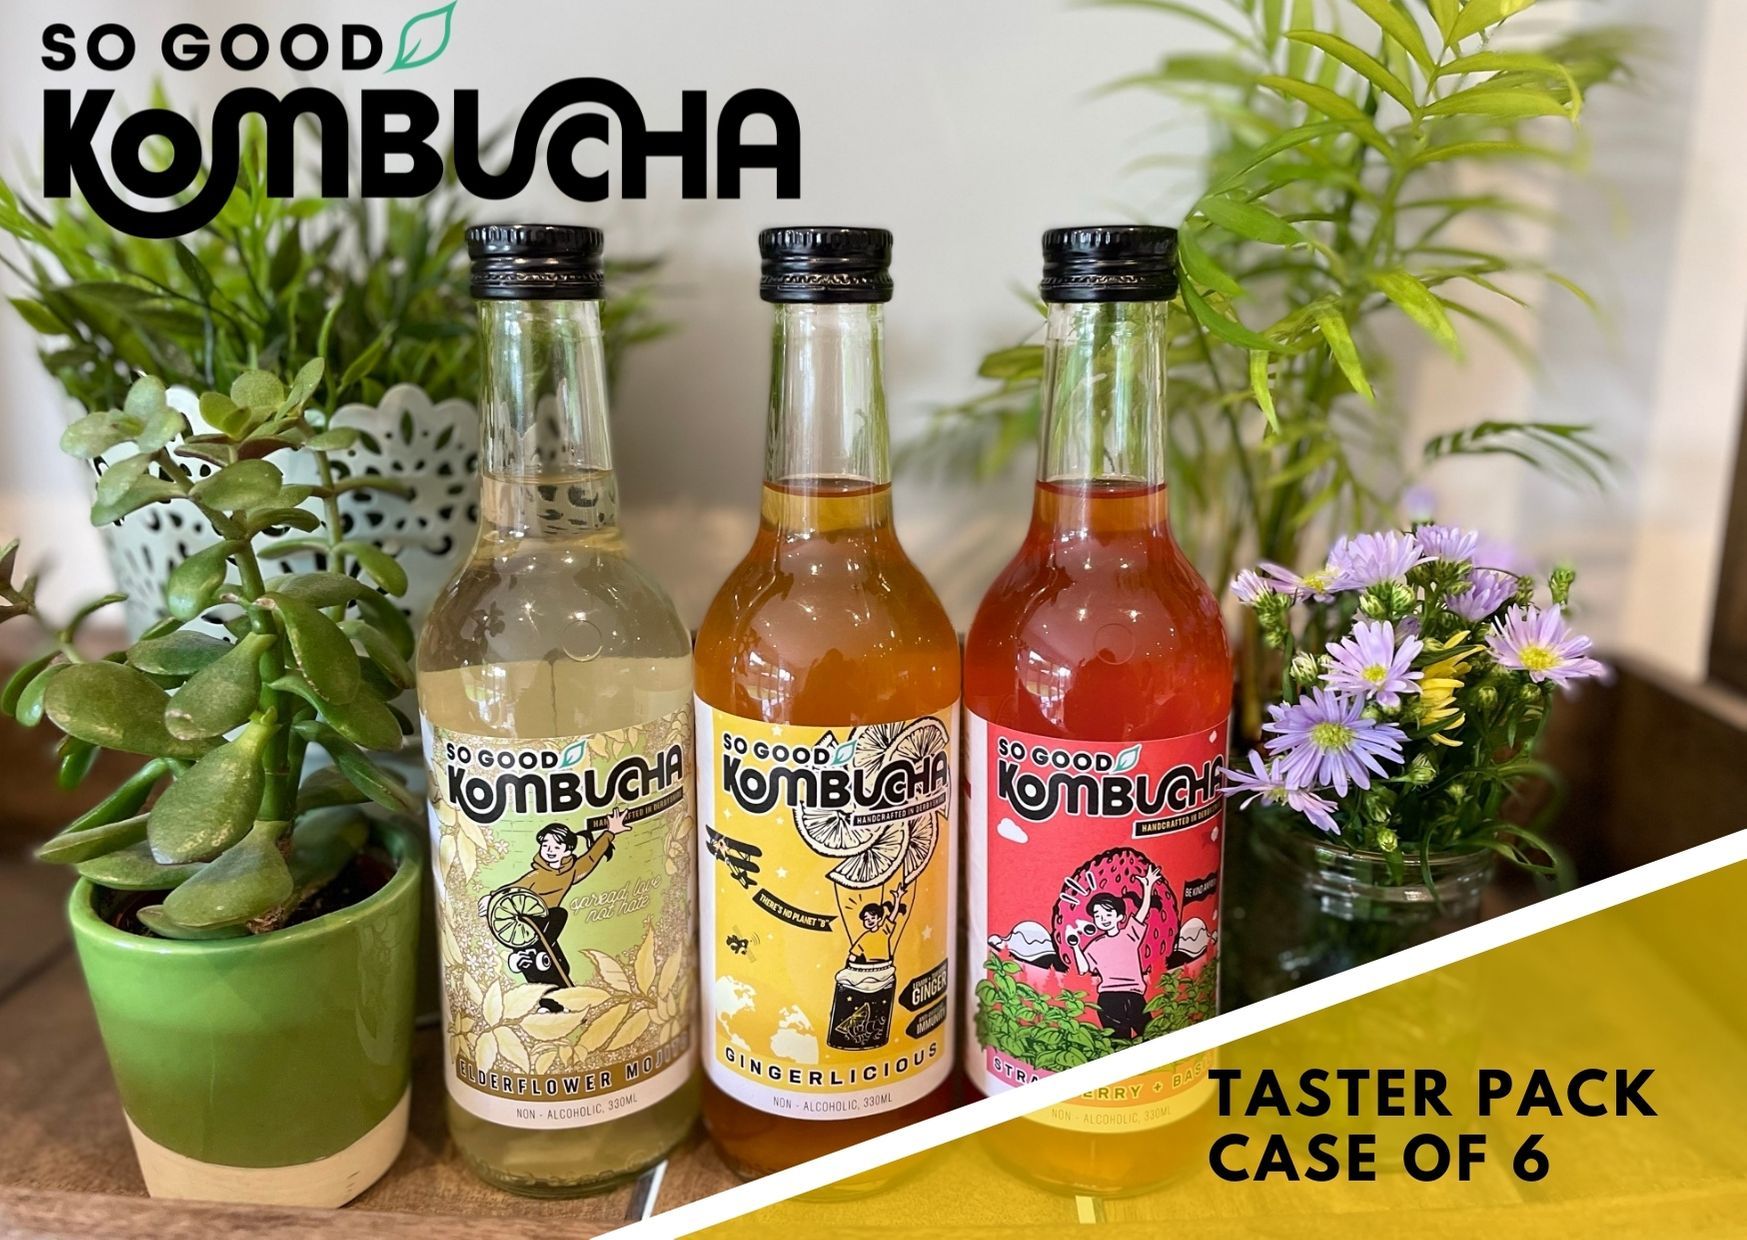 So Good Kombucha Taster Pack, Case of 6